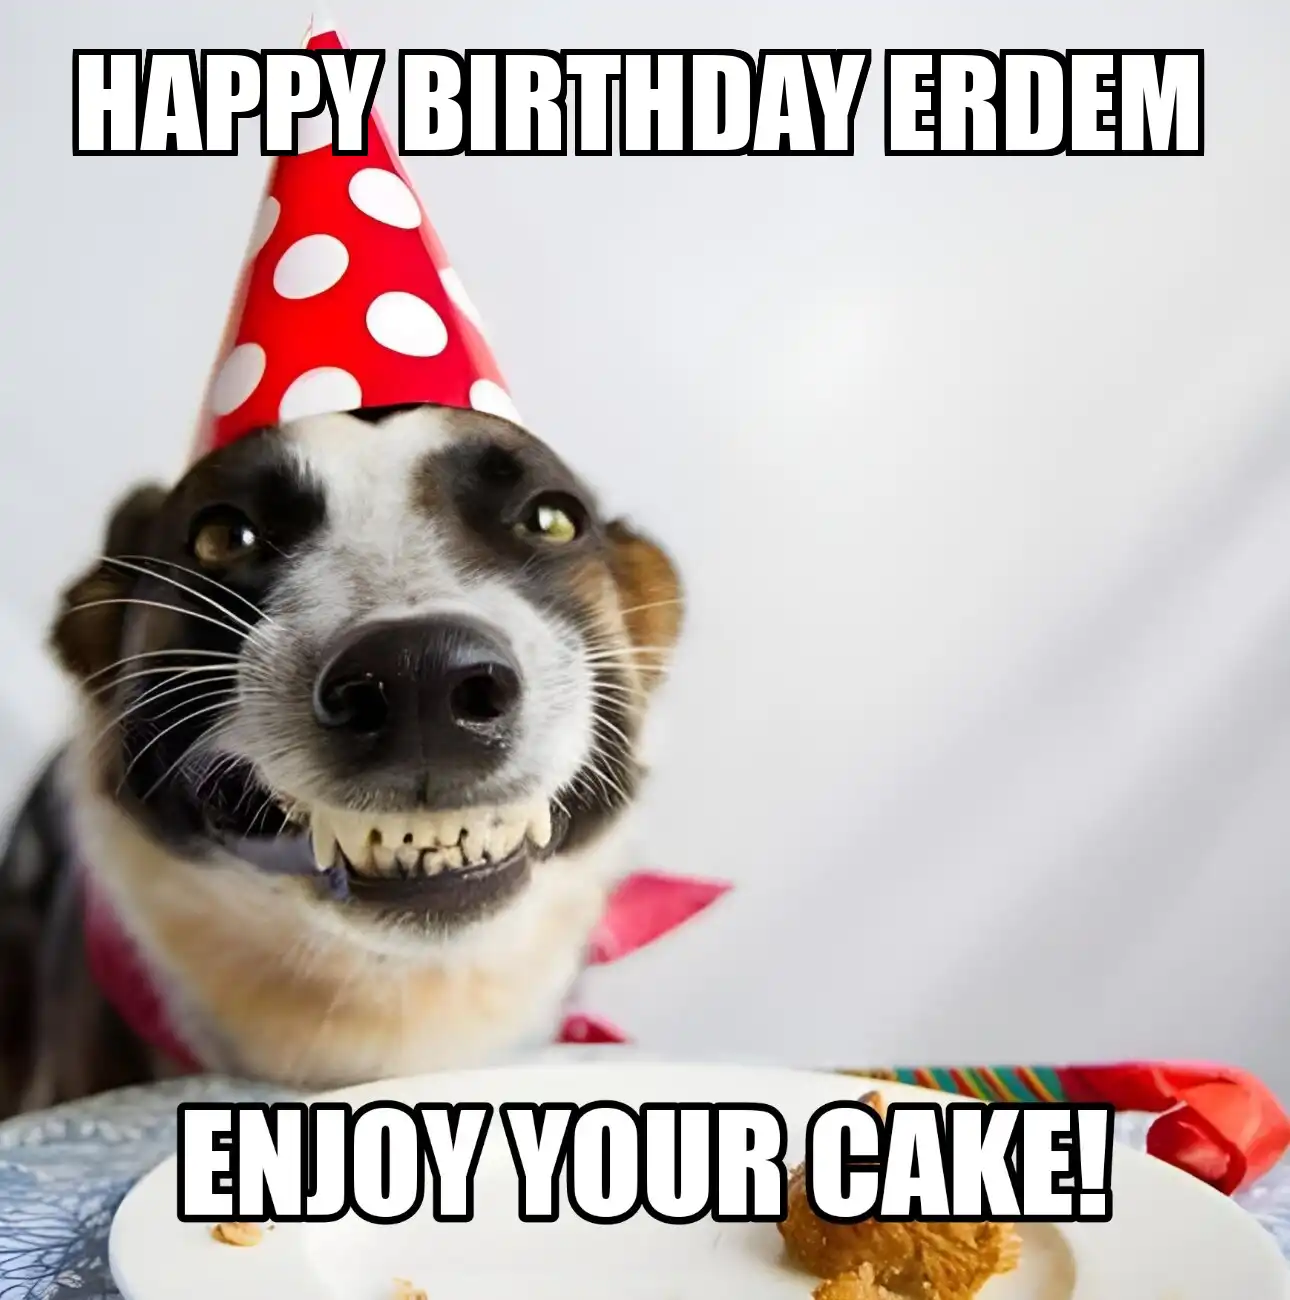 Happy Birthday Erdem Enjoy Your Cake Dog Meme